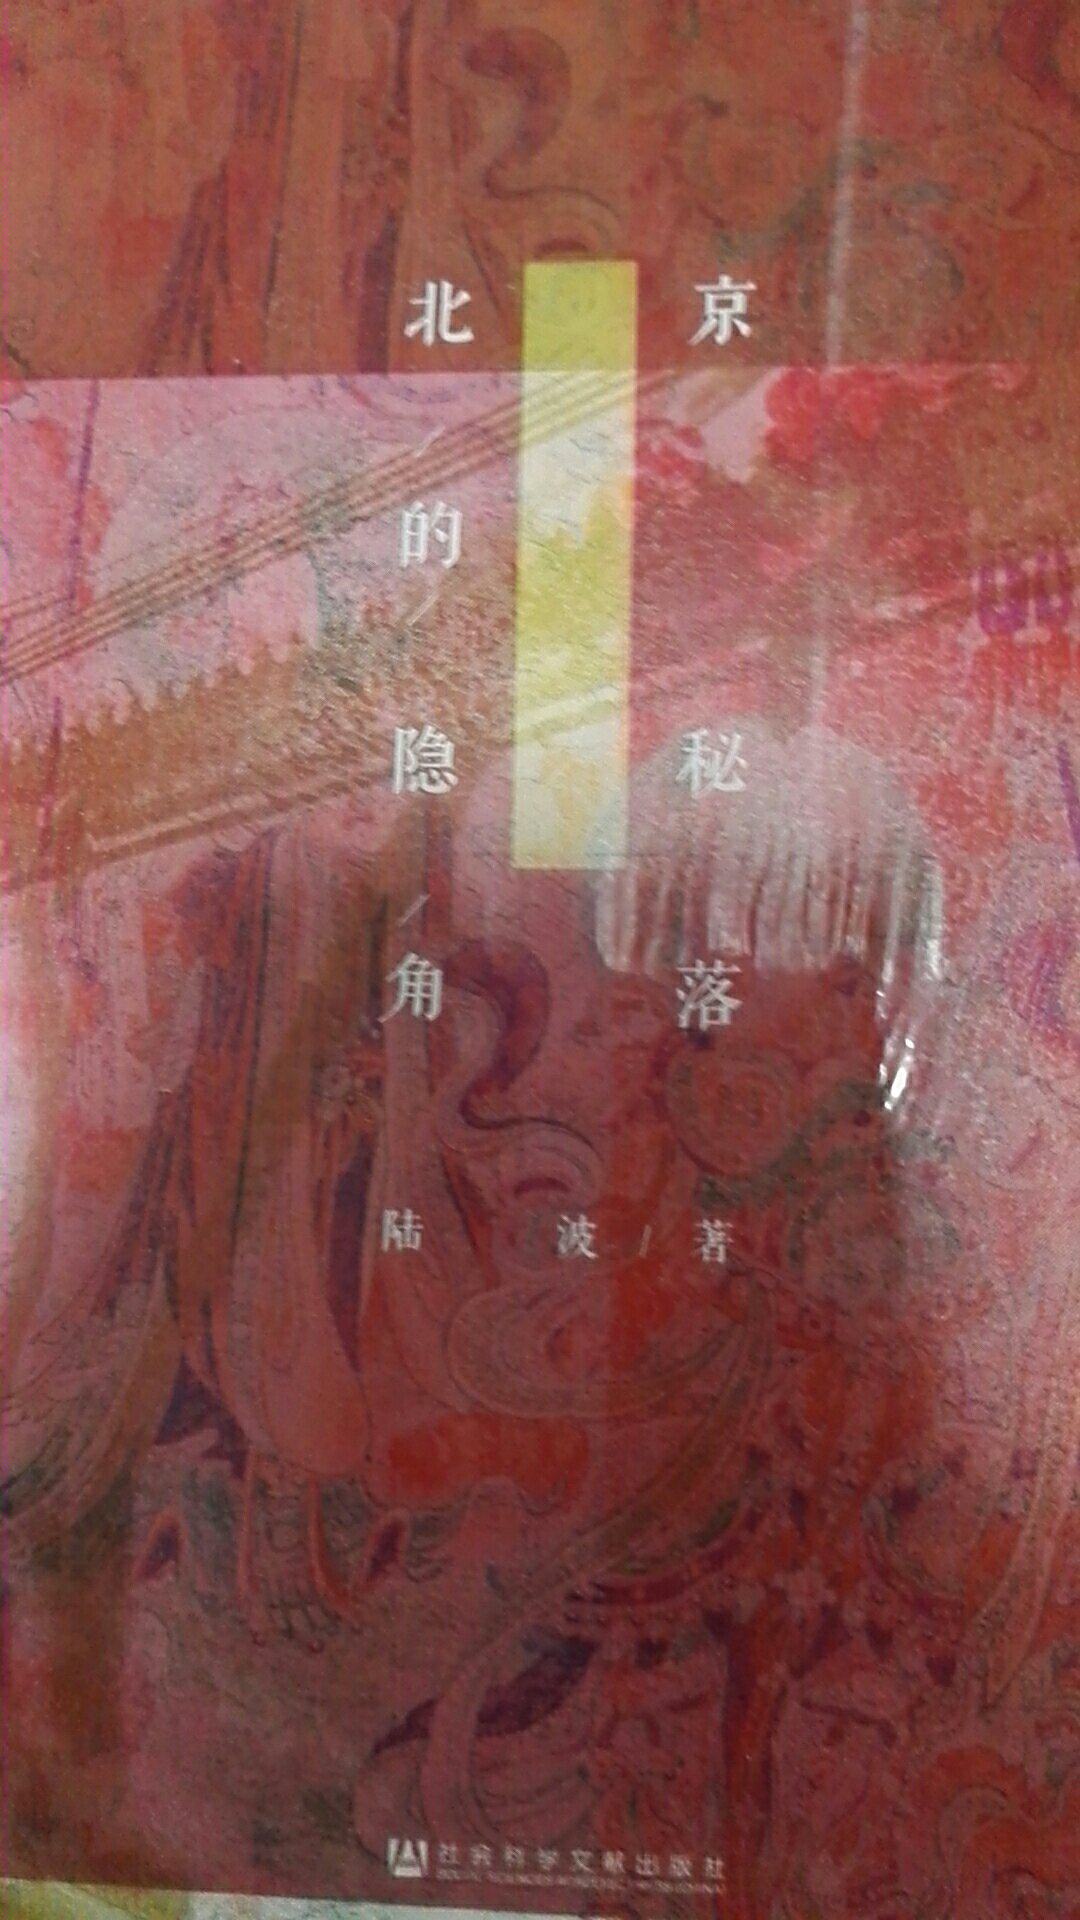 甲骨文香颂系列，探寻北京城市的一些细节。这次搞活动，果断入手。